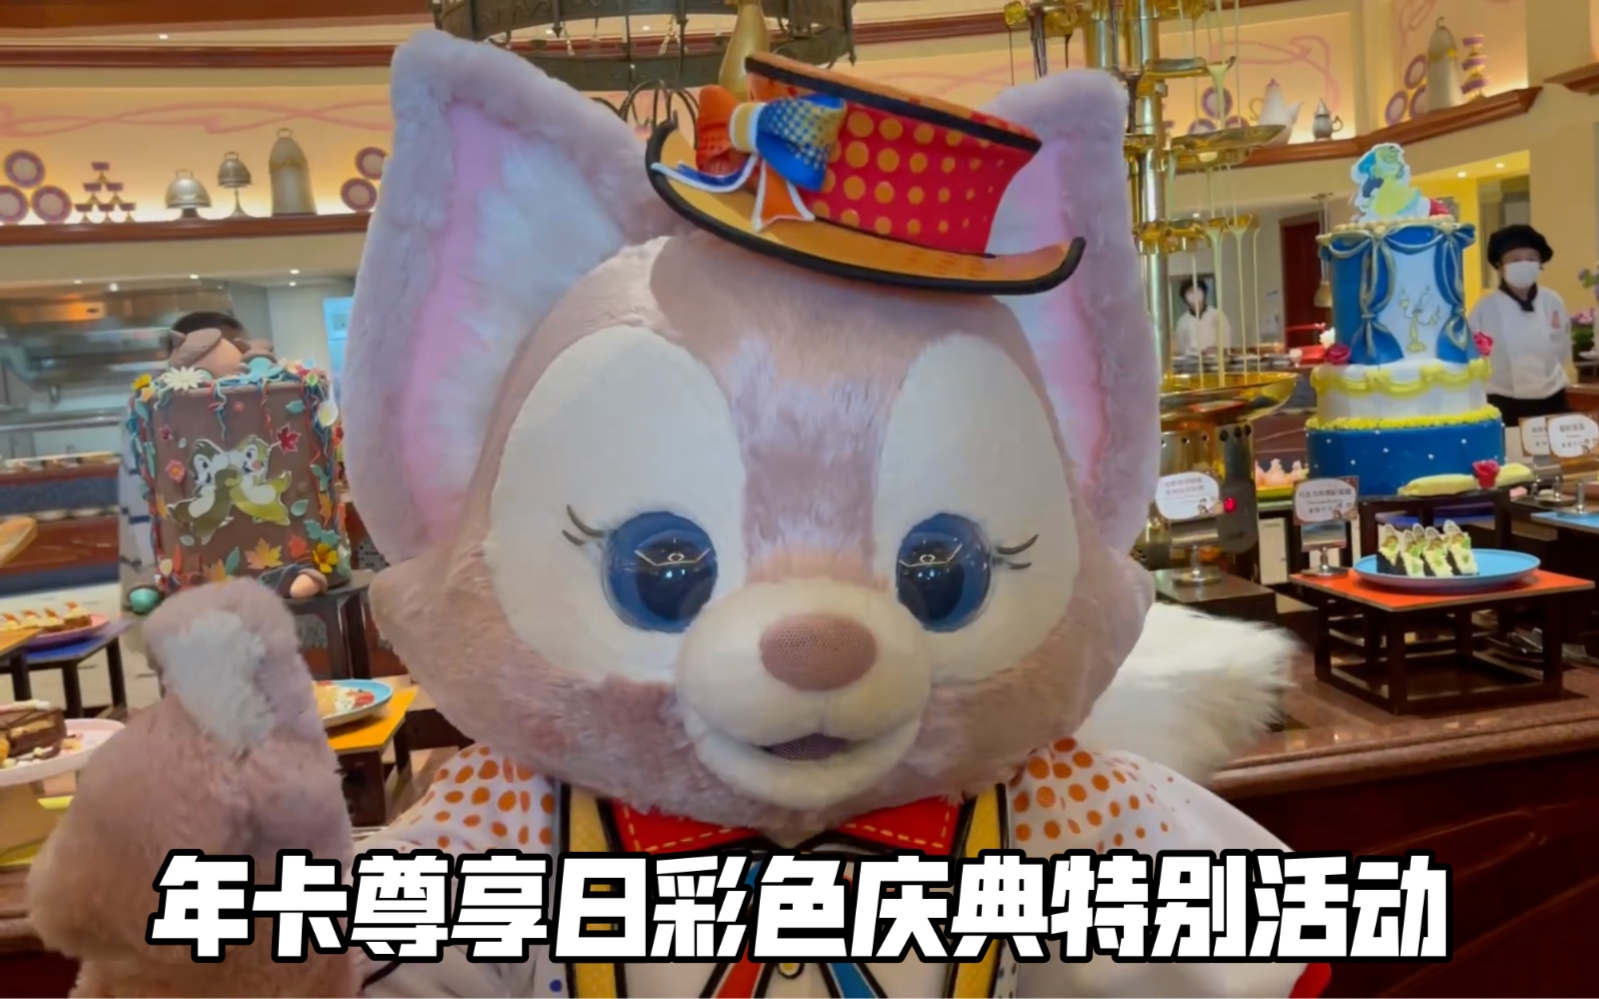 【上海迪士尼】年卡尊享日卢米亚厨房彩色庆典主题特别演出